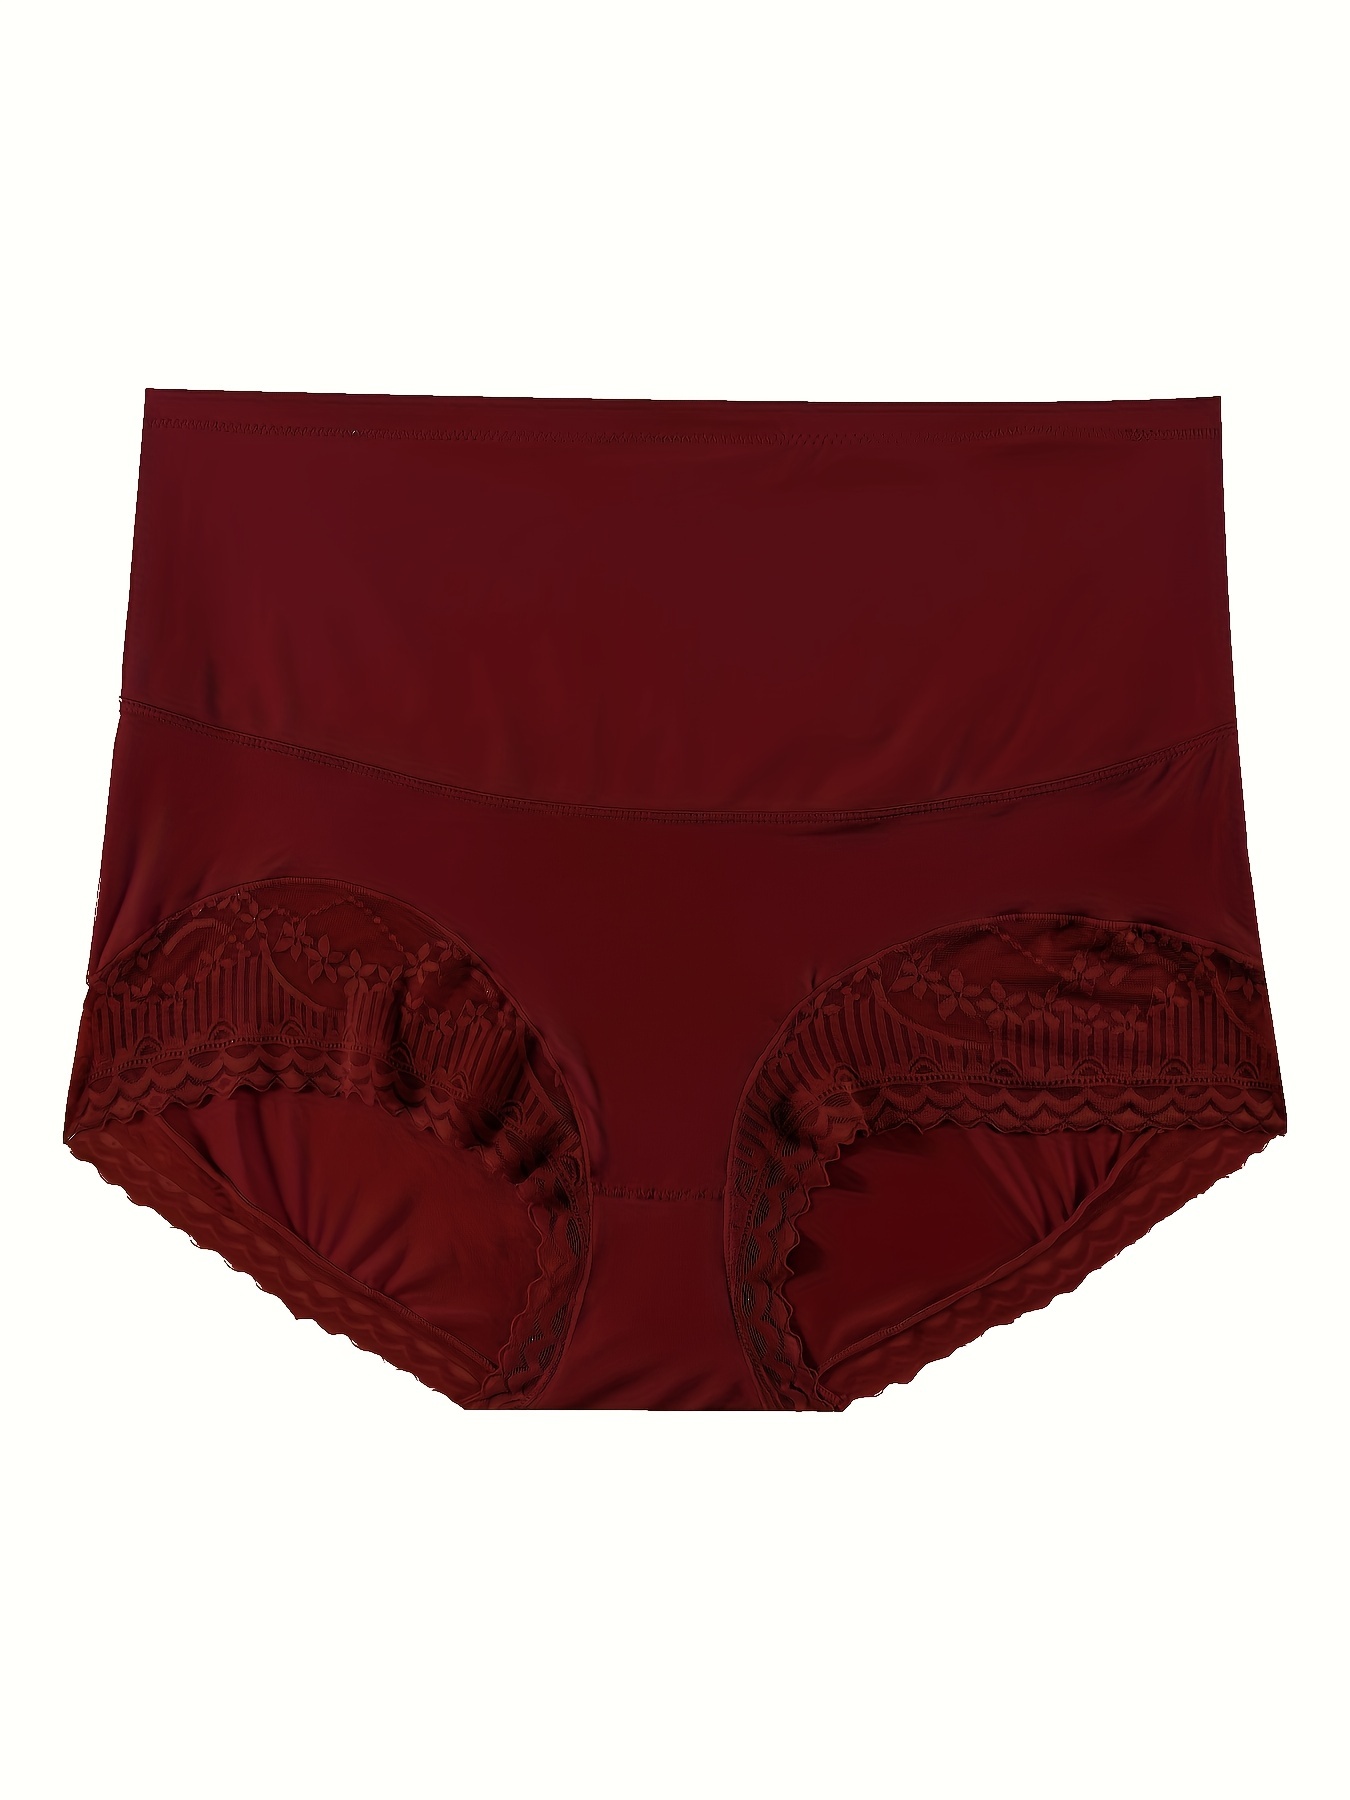 3PCS/Set Women's Panties Cotton Underwear Solid Color Briefs Girls